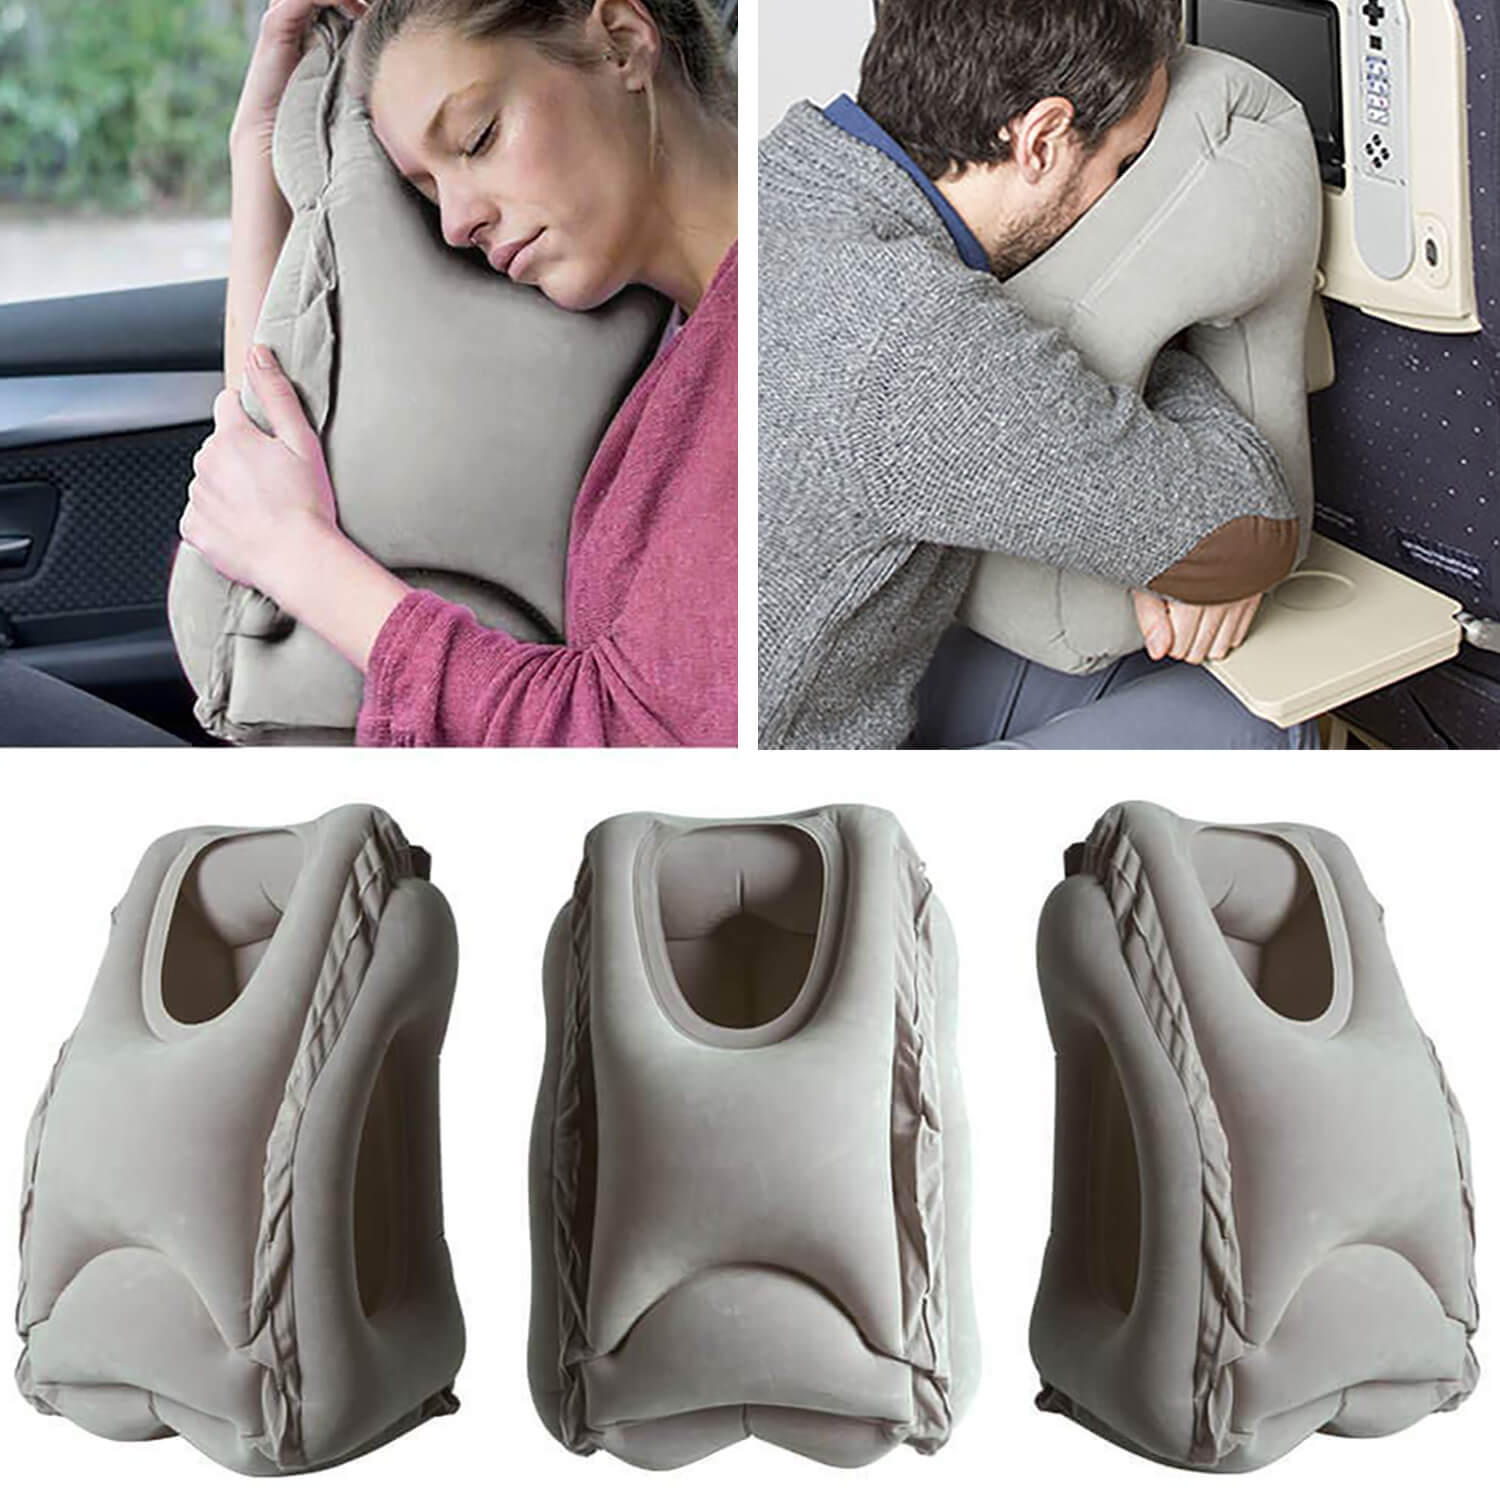 Inflatable Seat Cushion - Travel Seat Cushion for Wheelchair, Airplane,  Car